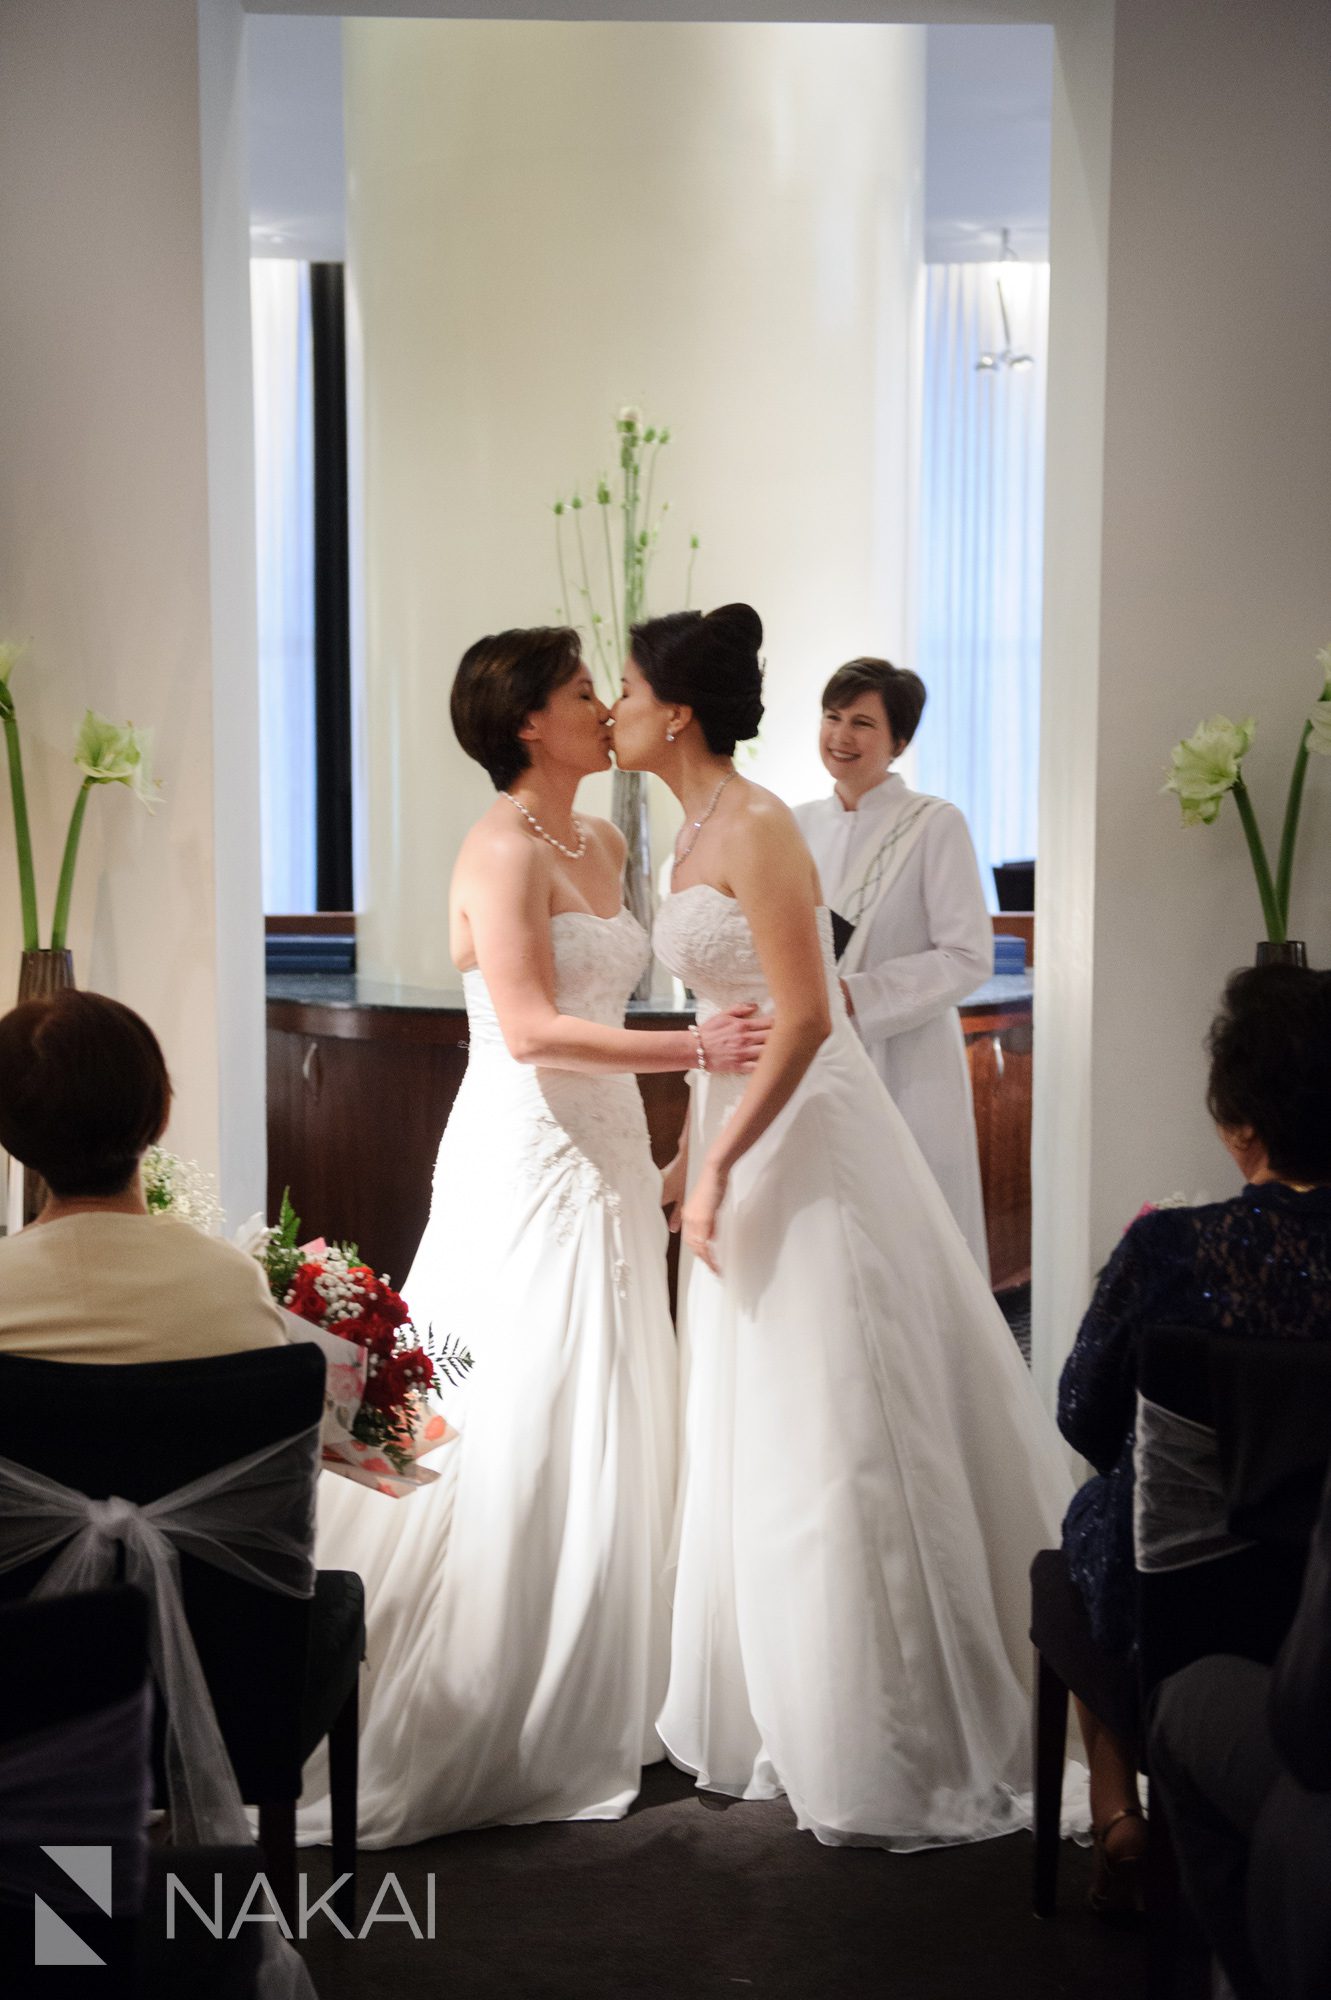 same-sex-wedding-chicago-photos-chicago-nakai-photography-034